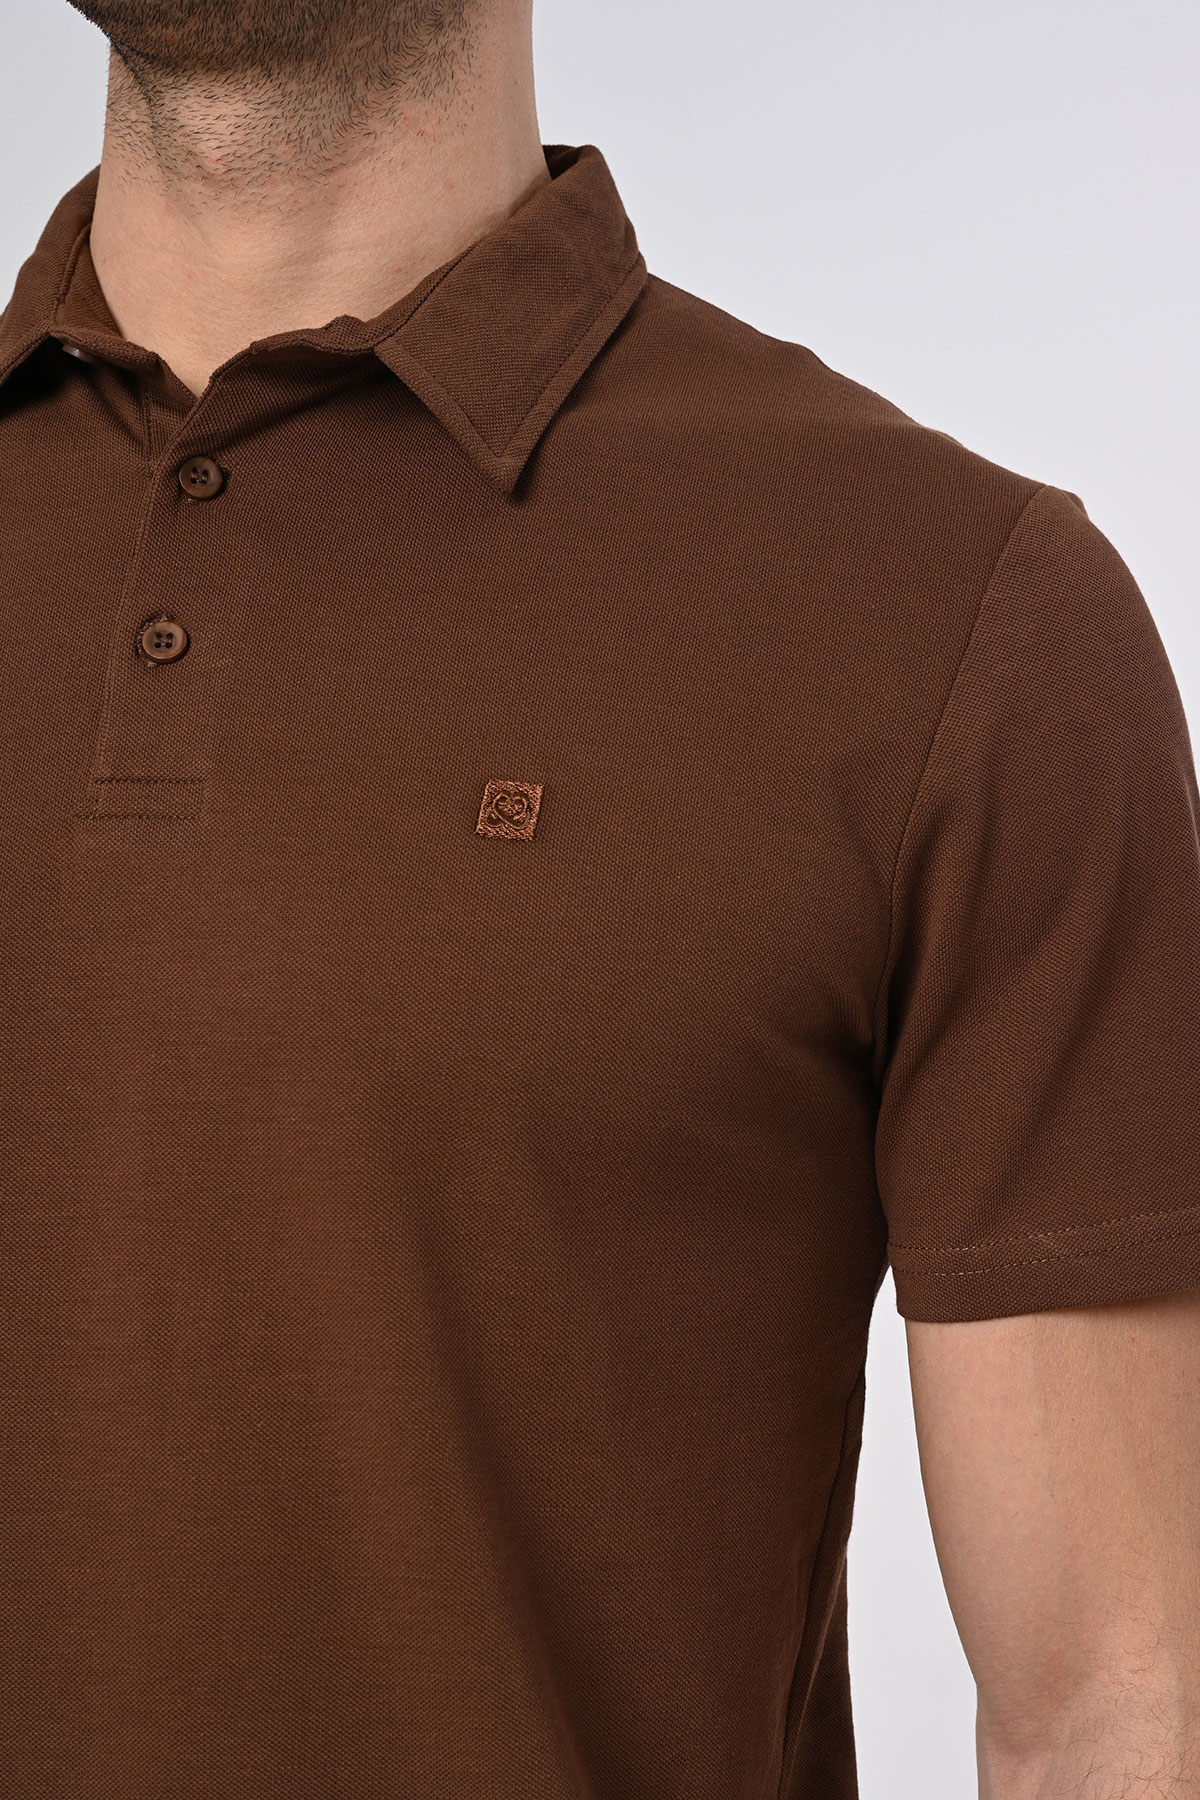 Vav Tasarım Punto Baskılı Pamuk Polo Yaka Koyu Kahverengi T-shirt 23'